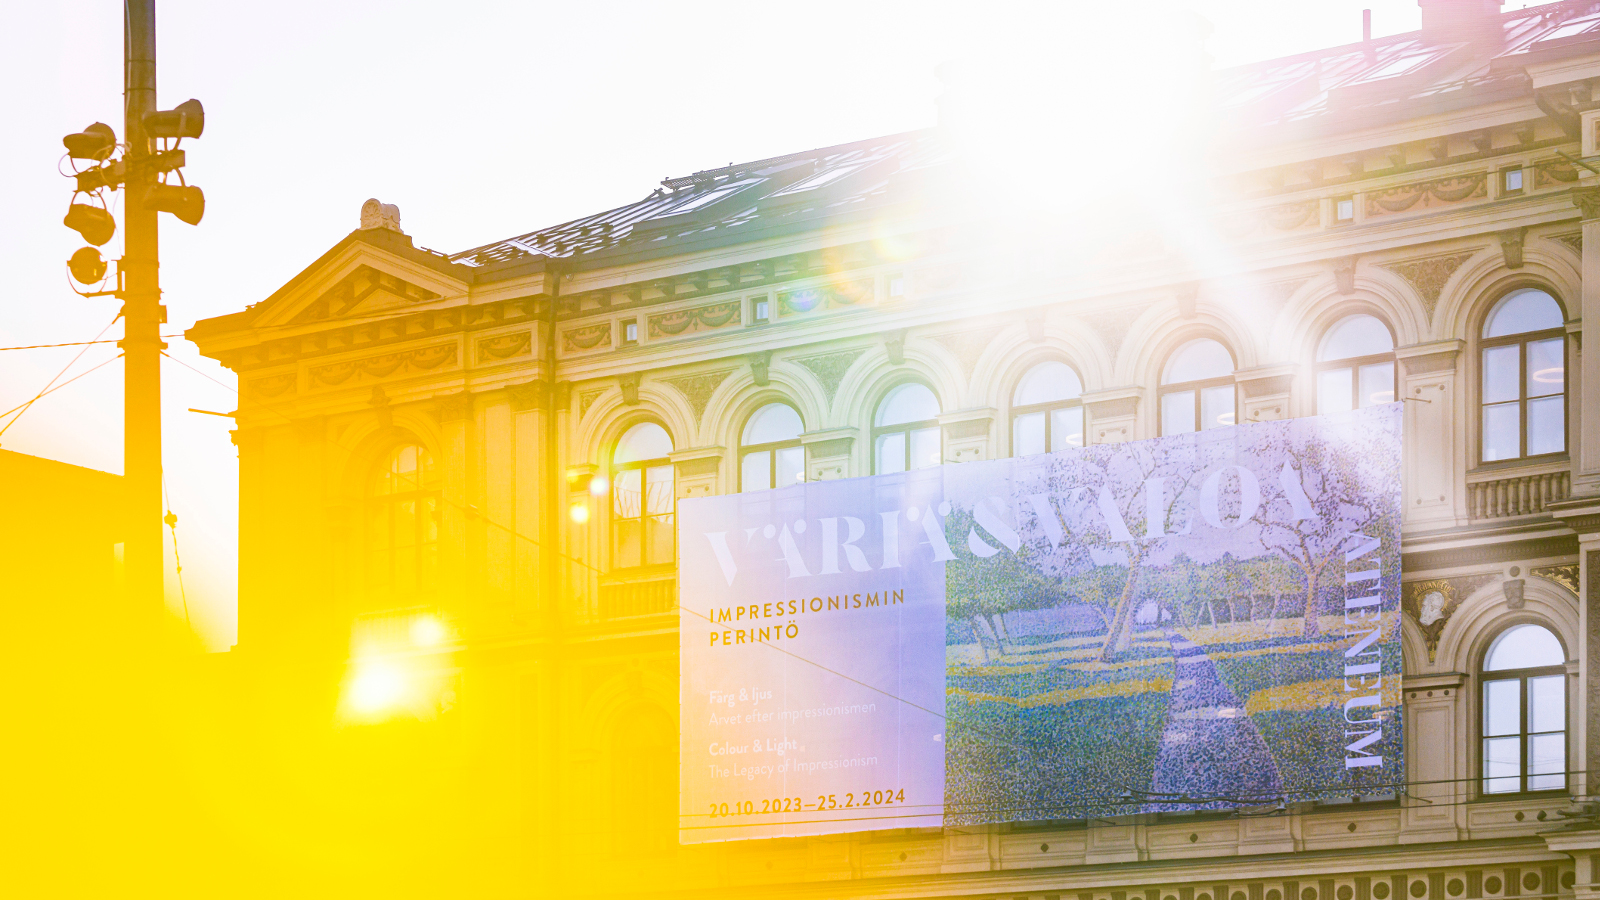 Kuvassa on Ateneumin päärakennuksen julkisivu ja siihen osuu keltainen valo vasemmalta ja oikealta tulee auringon valoa.  Seinällä on iso mainoslakana.